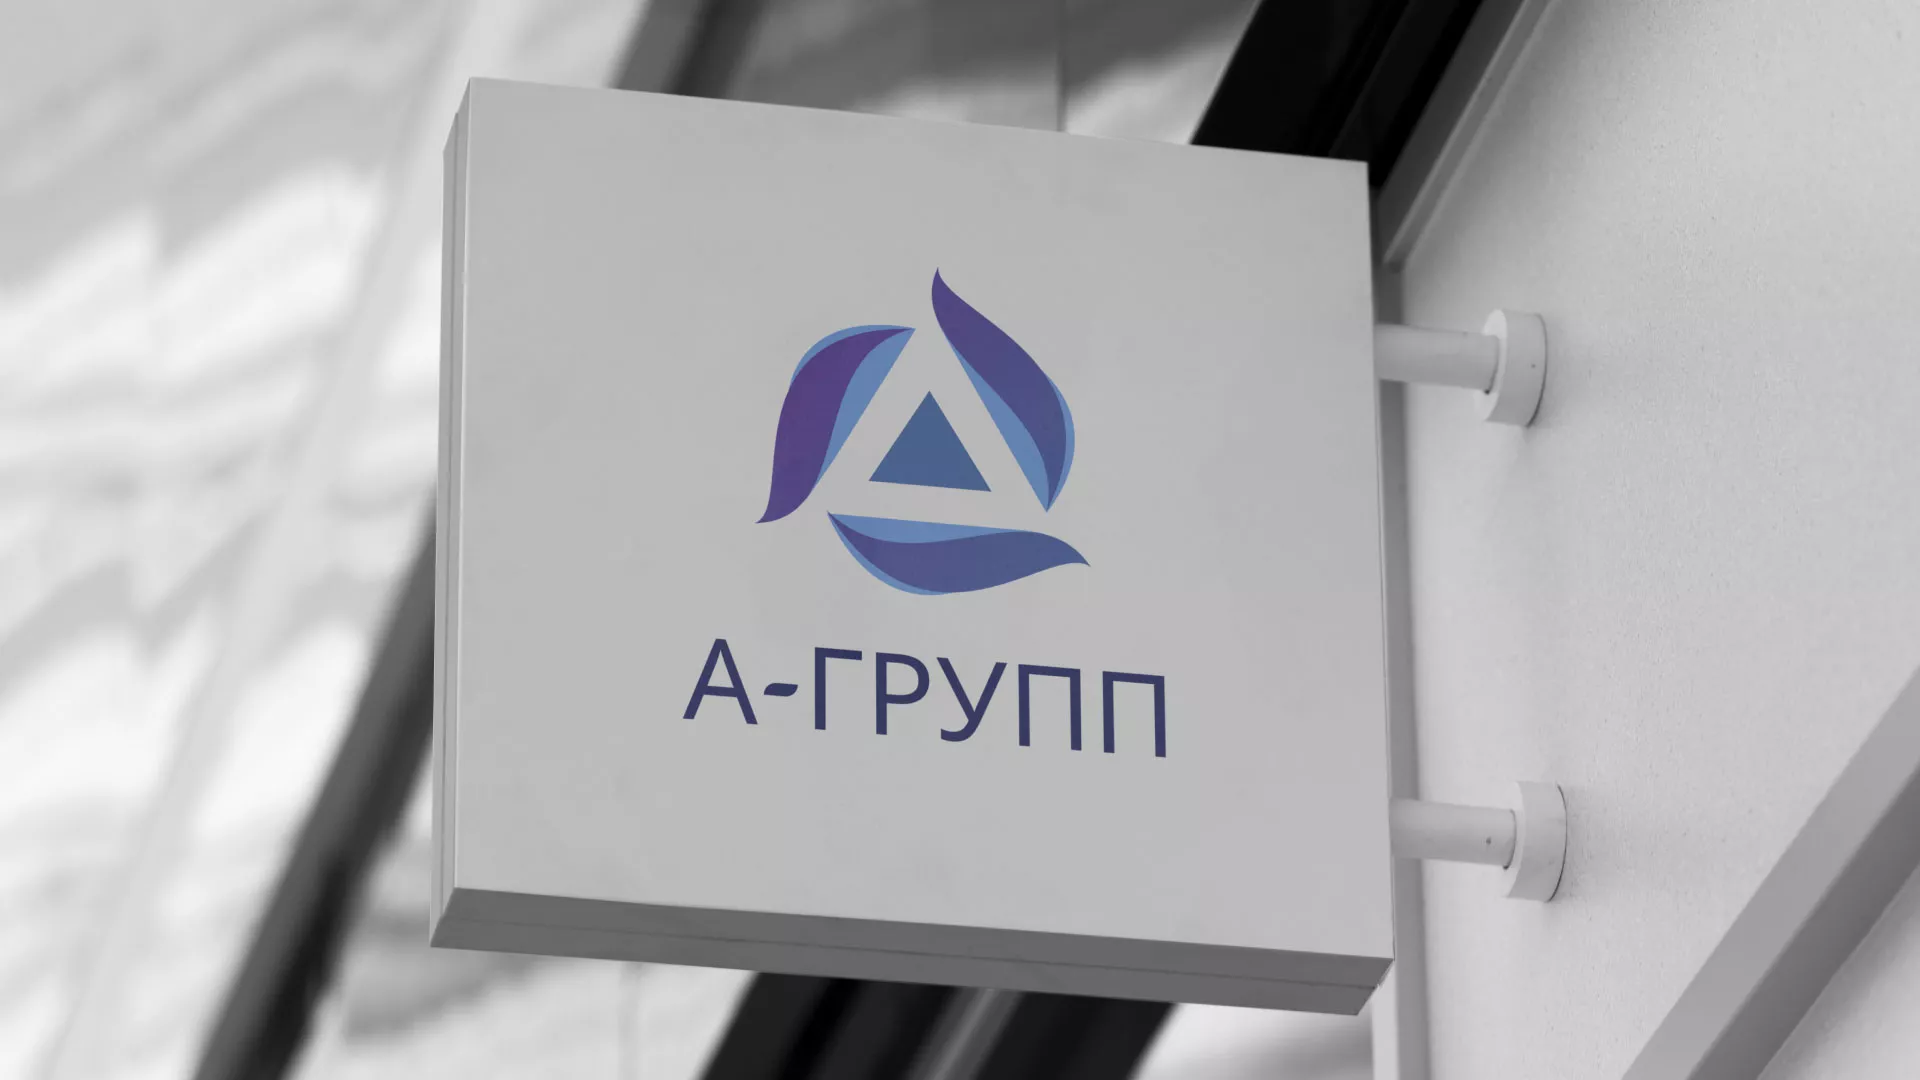 Создание логотипа компании «А-ГРУПП» в Петухово